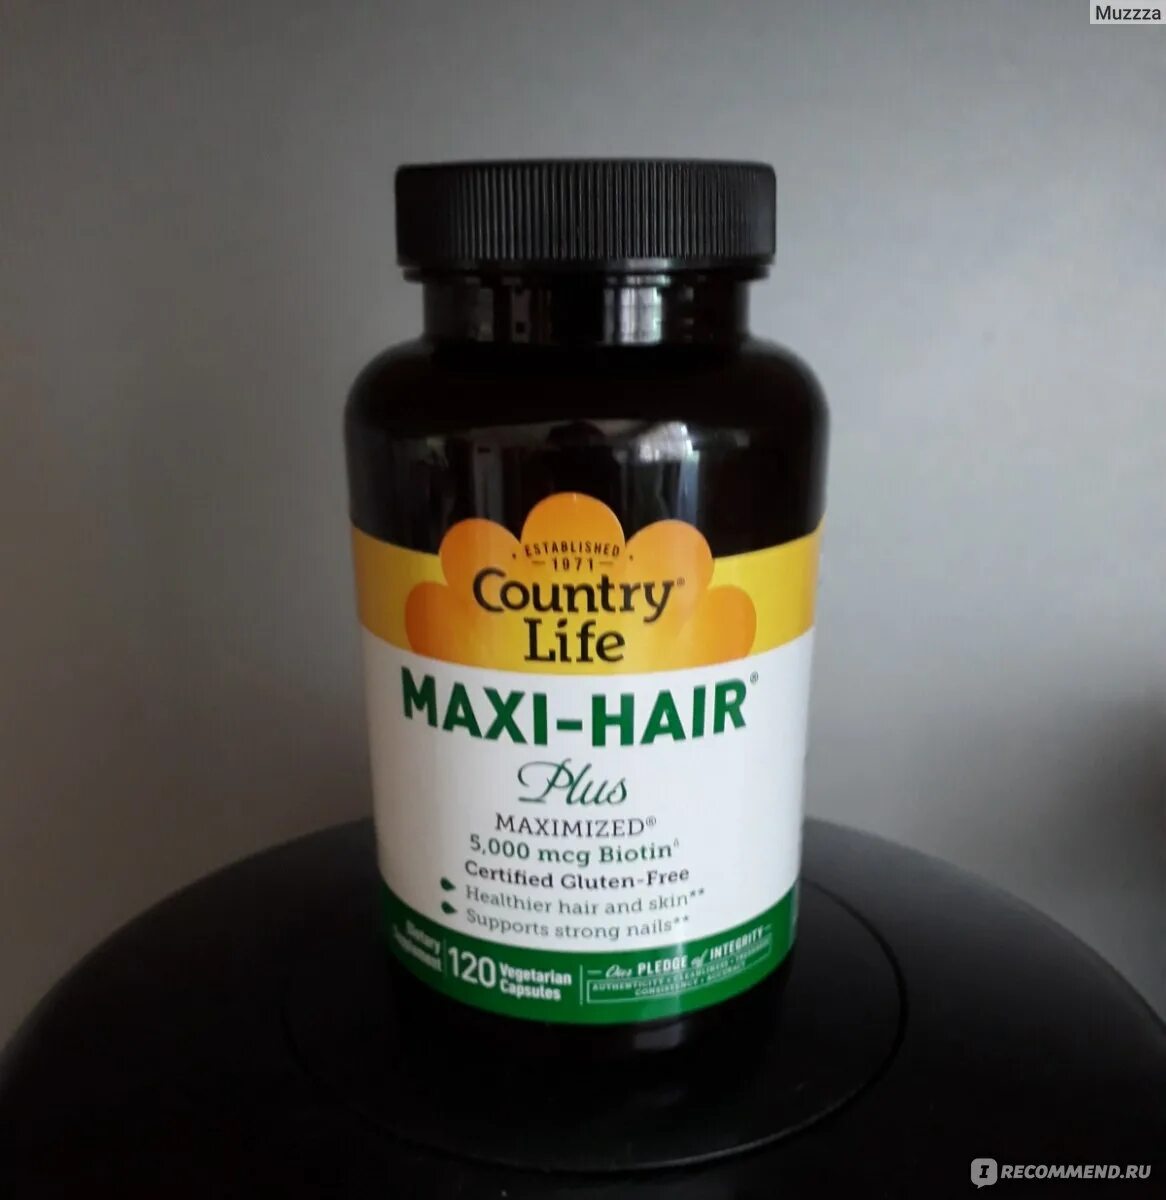 Maxi hair plus. Макси Хаир плюс. Country Life Maxi hair Plus. Картинка Country Life, Maxi-hair. Кантри лайф макси Хаир фото.